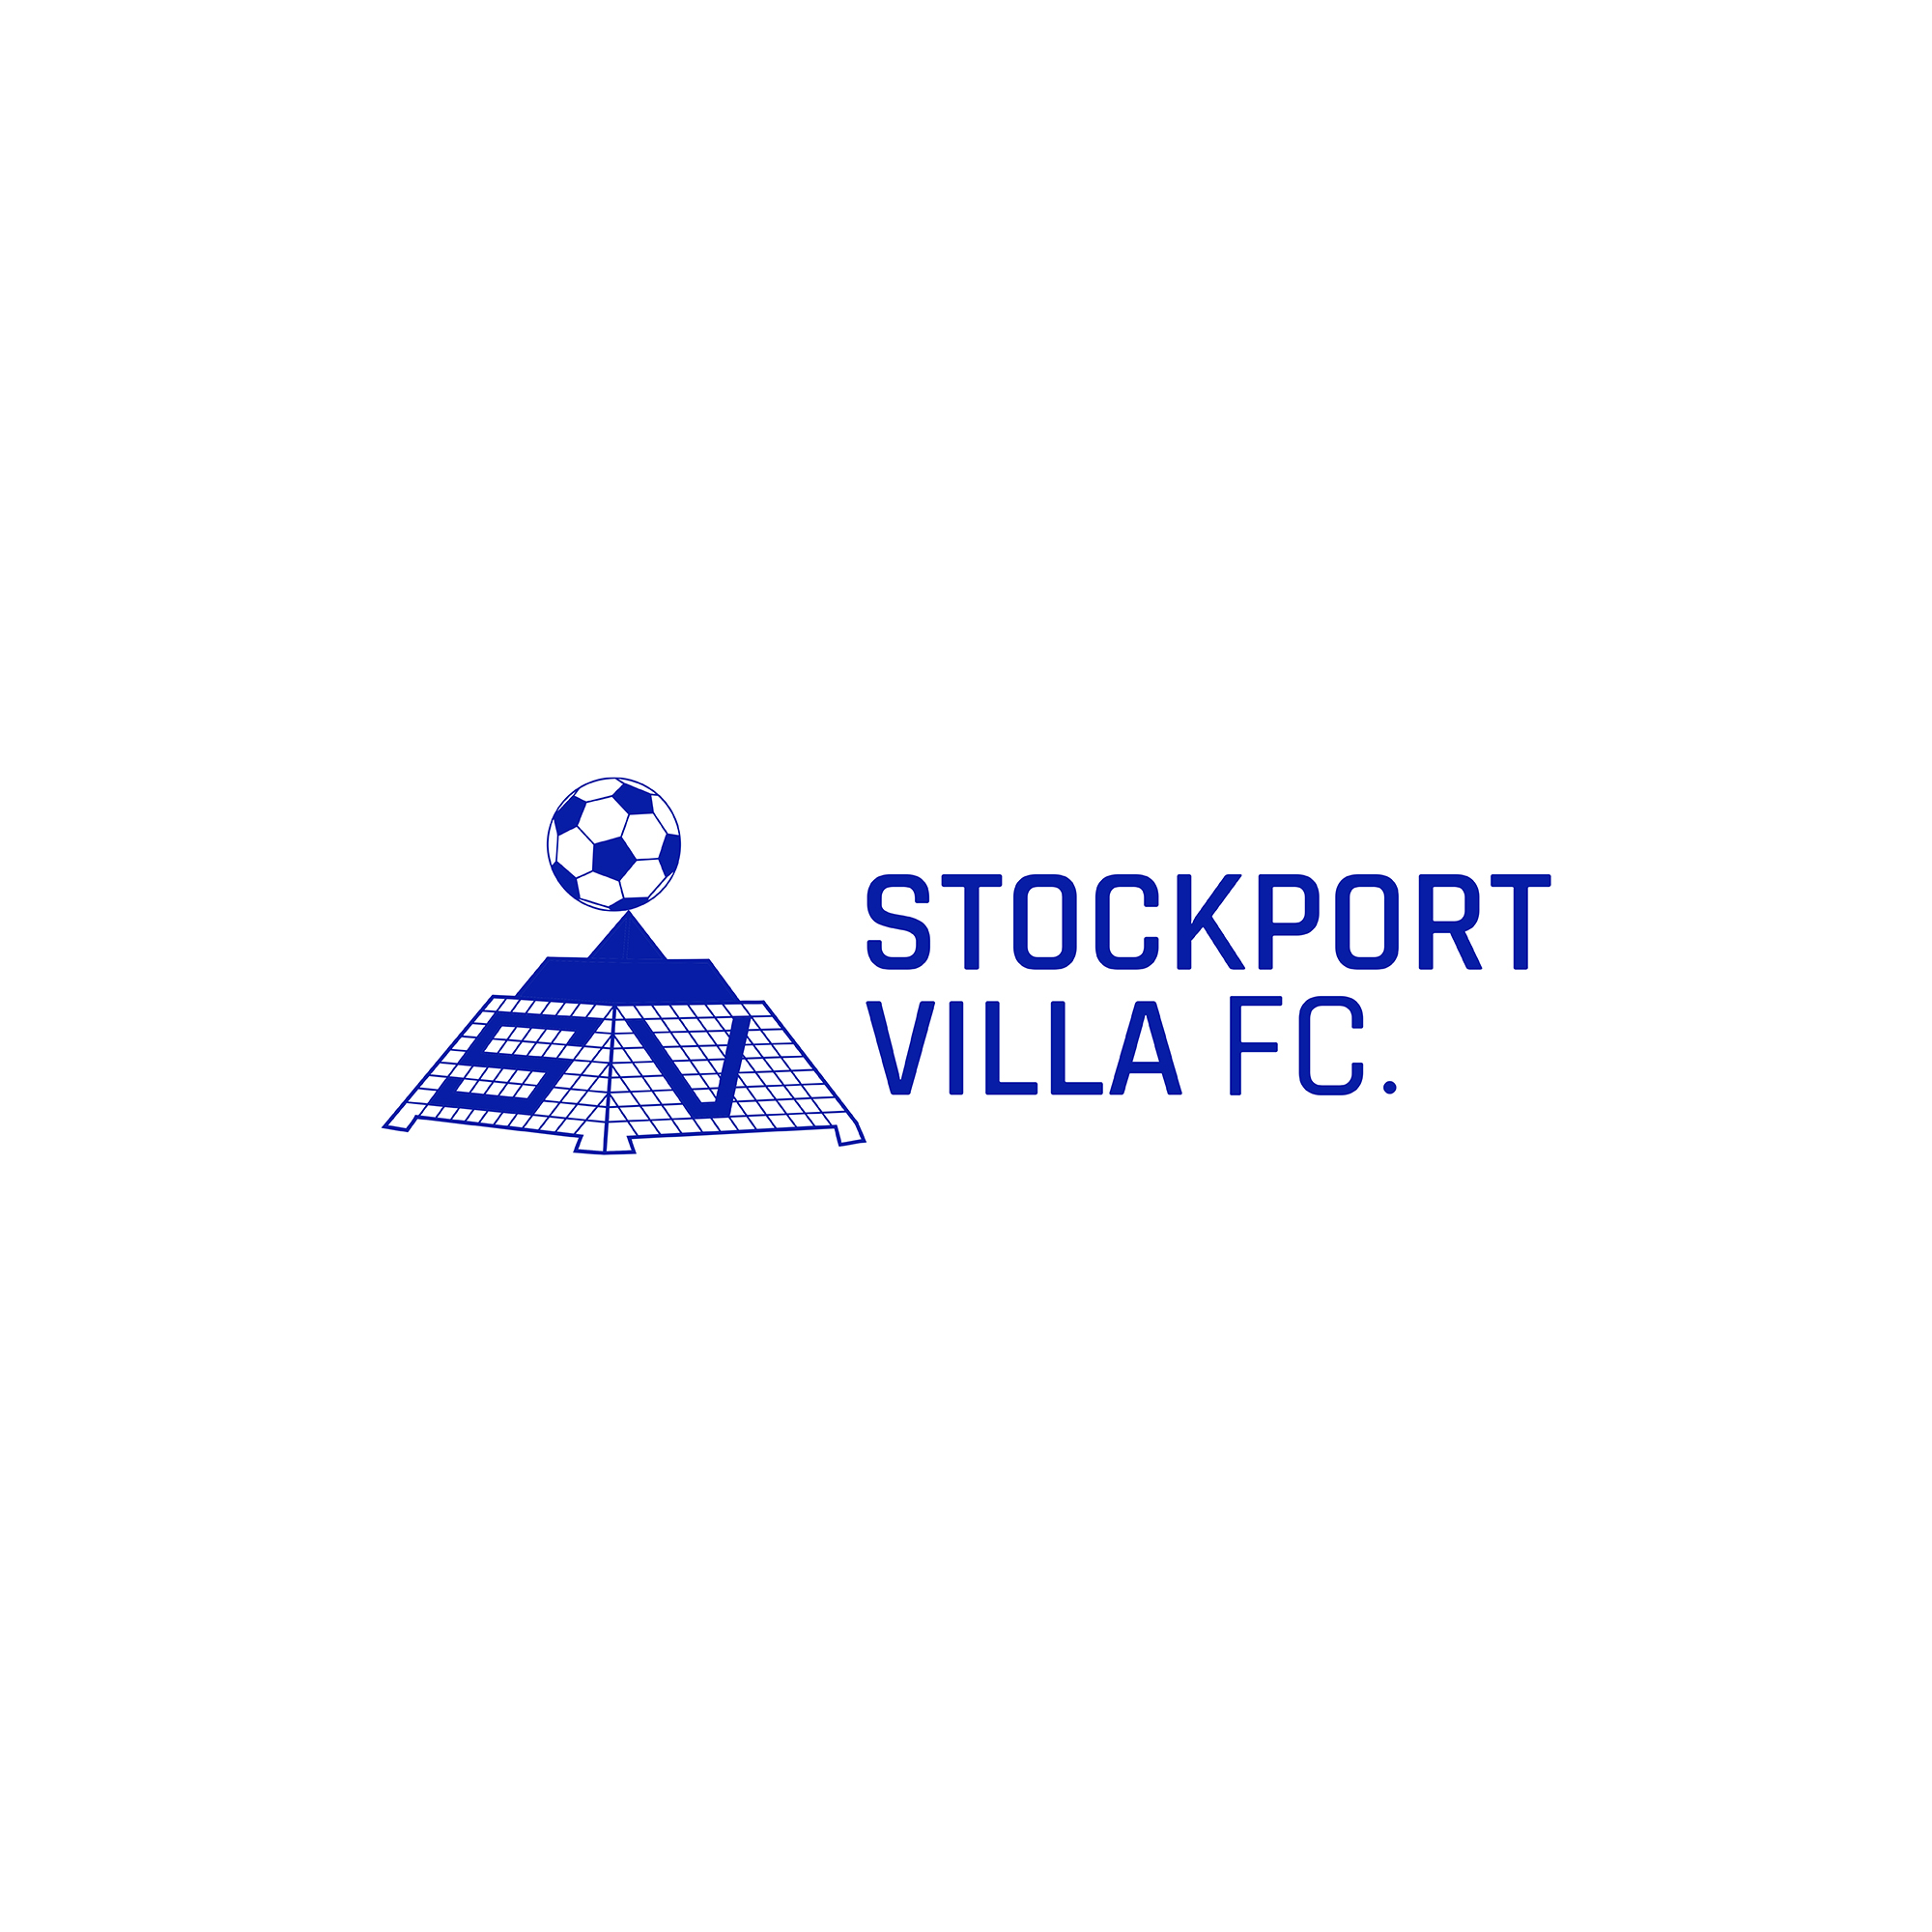 New Football Club – Stockport Villa FC